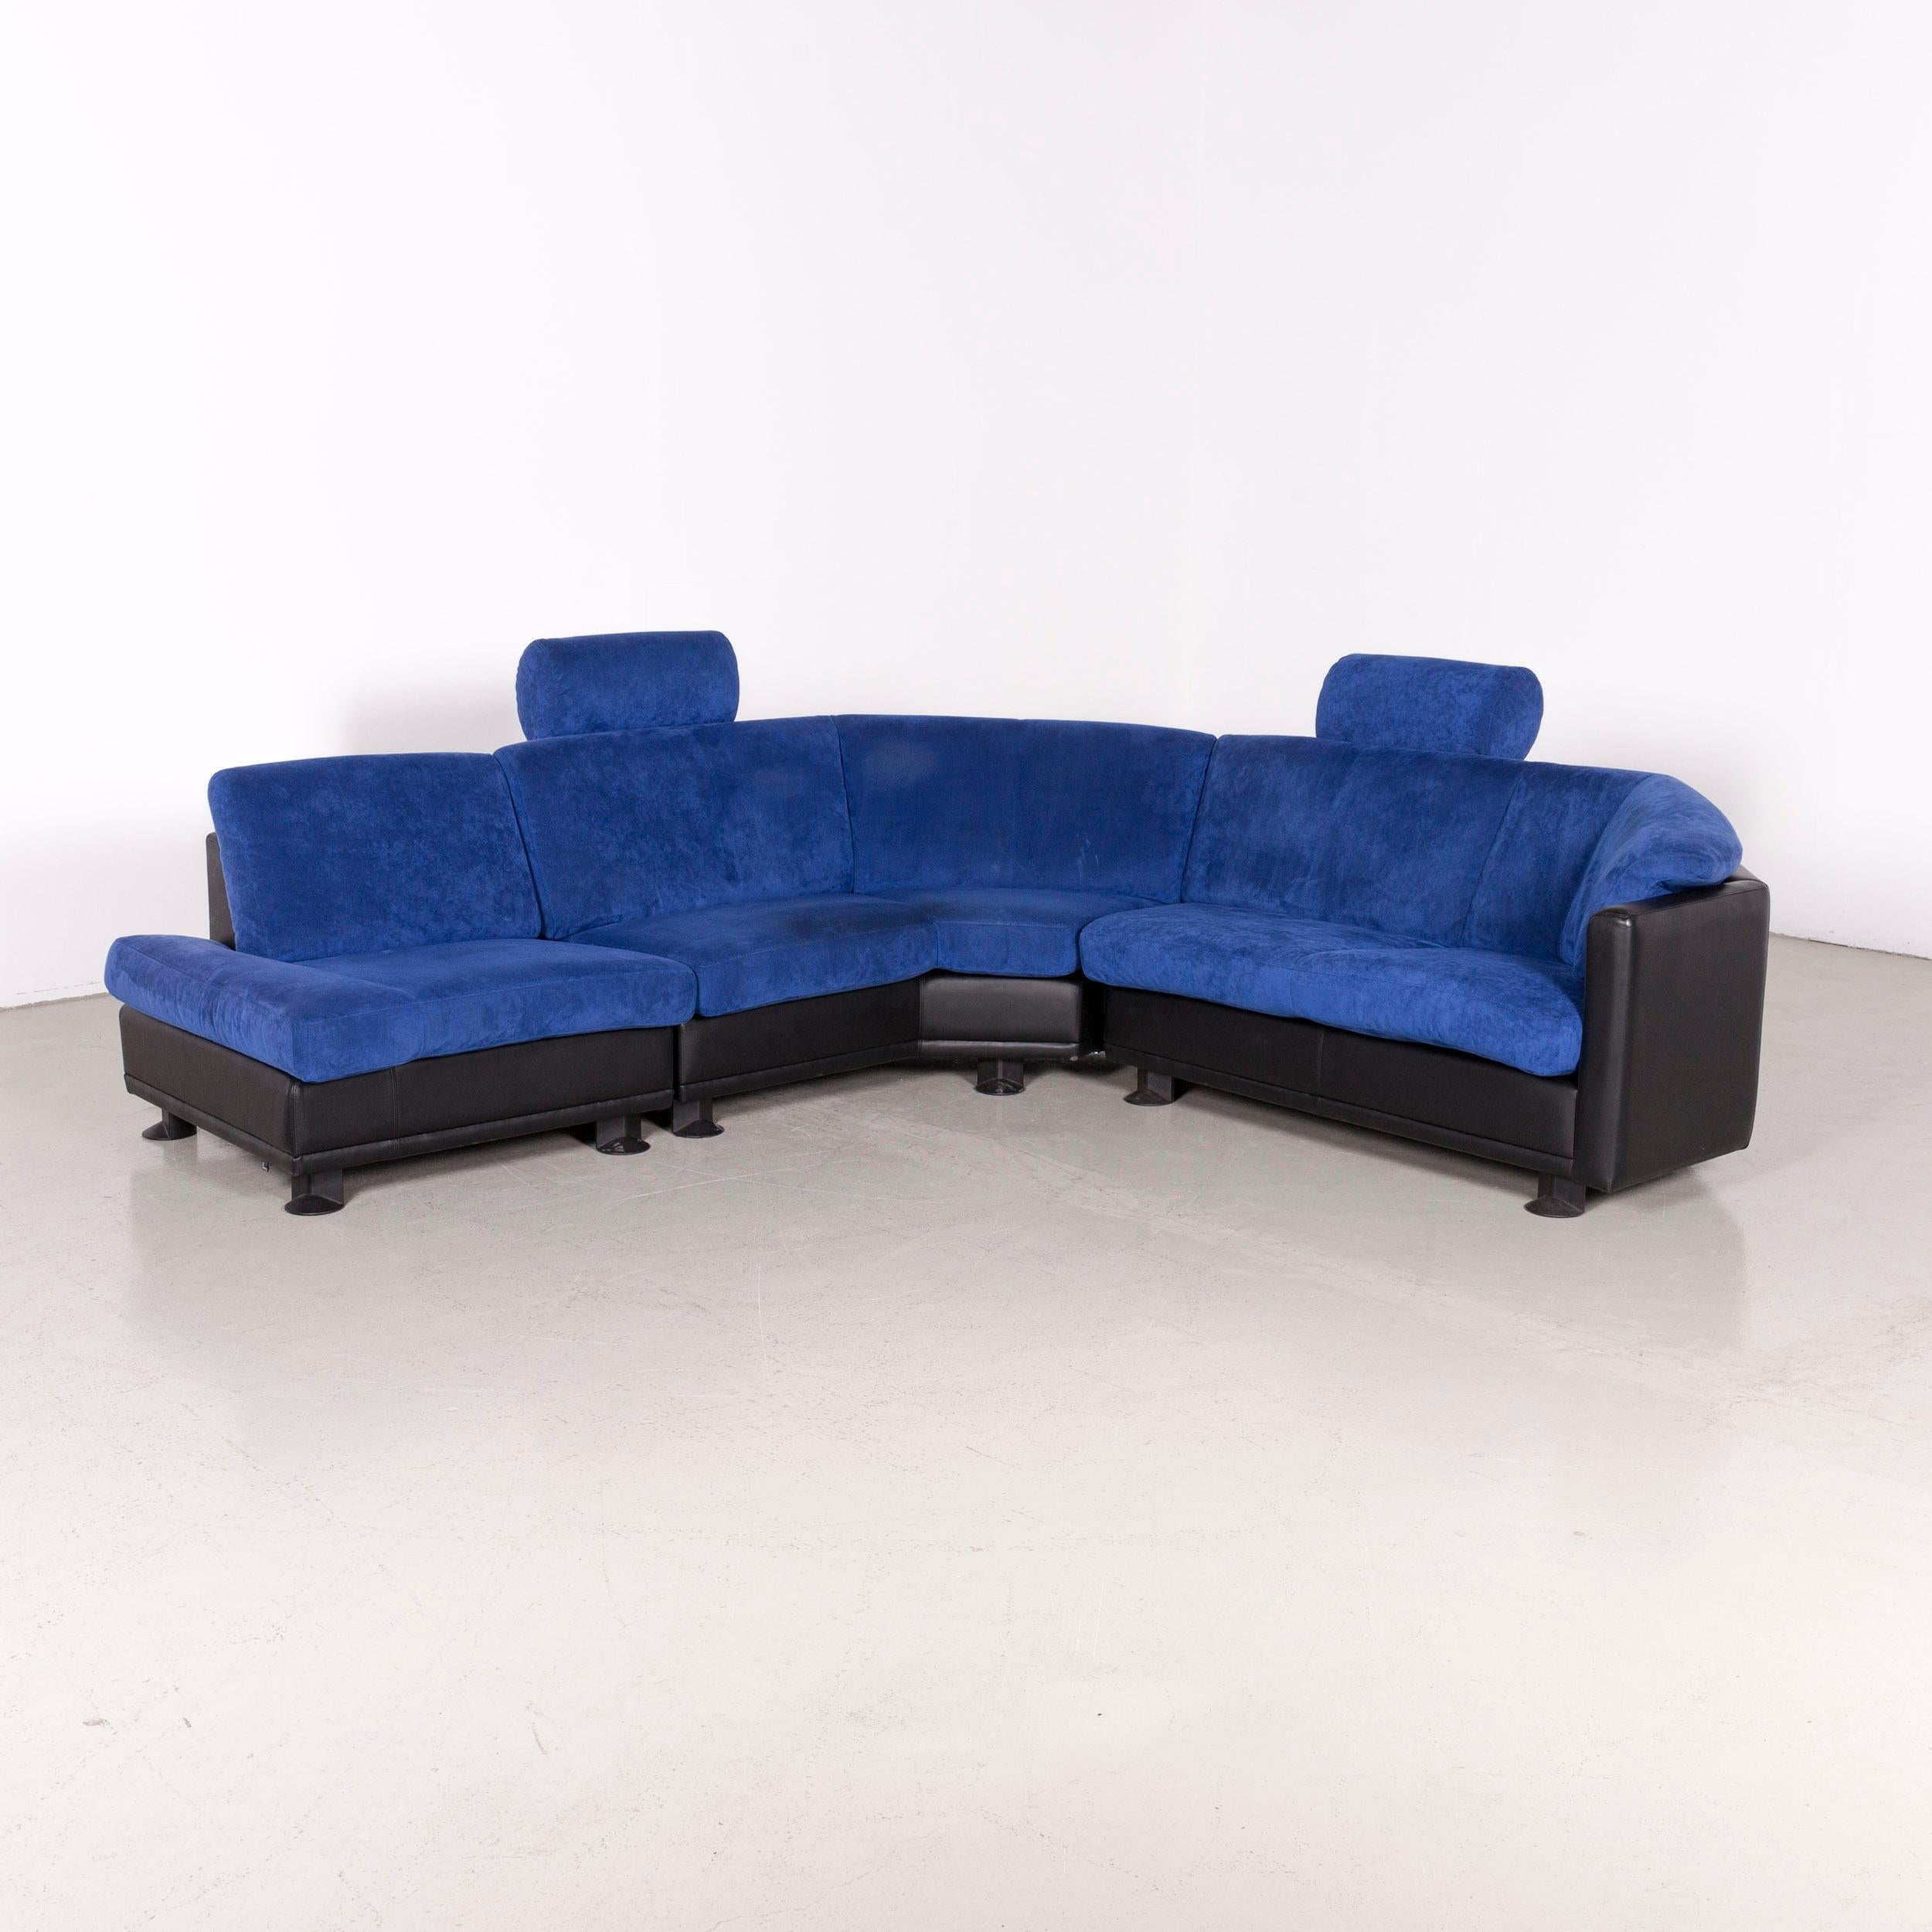 Leolux Antipode designer fabric corner couch blue sofa.